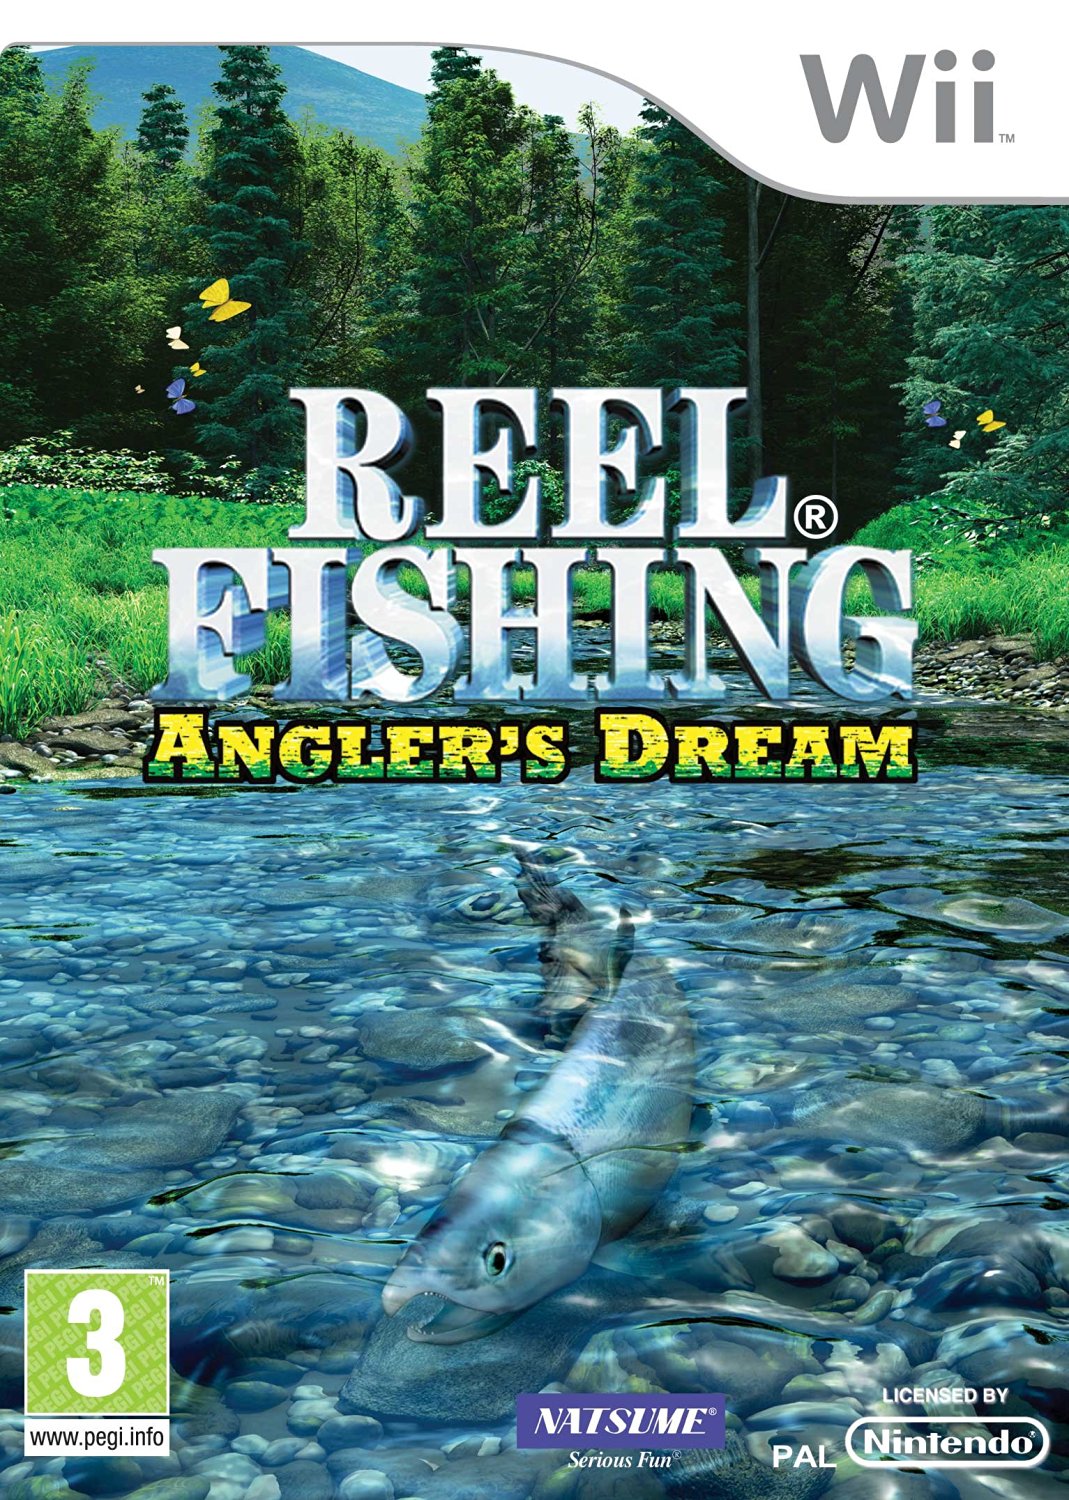 Wii Reel Fishing: Angler's Dream